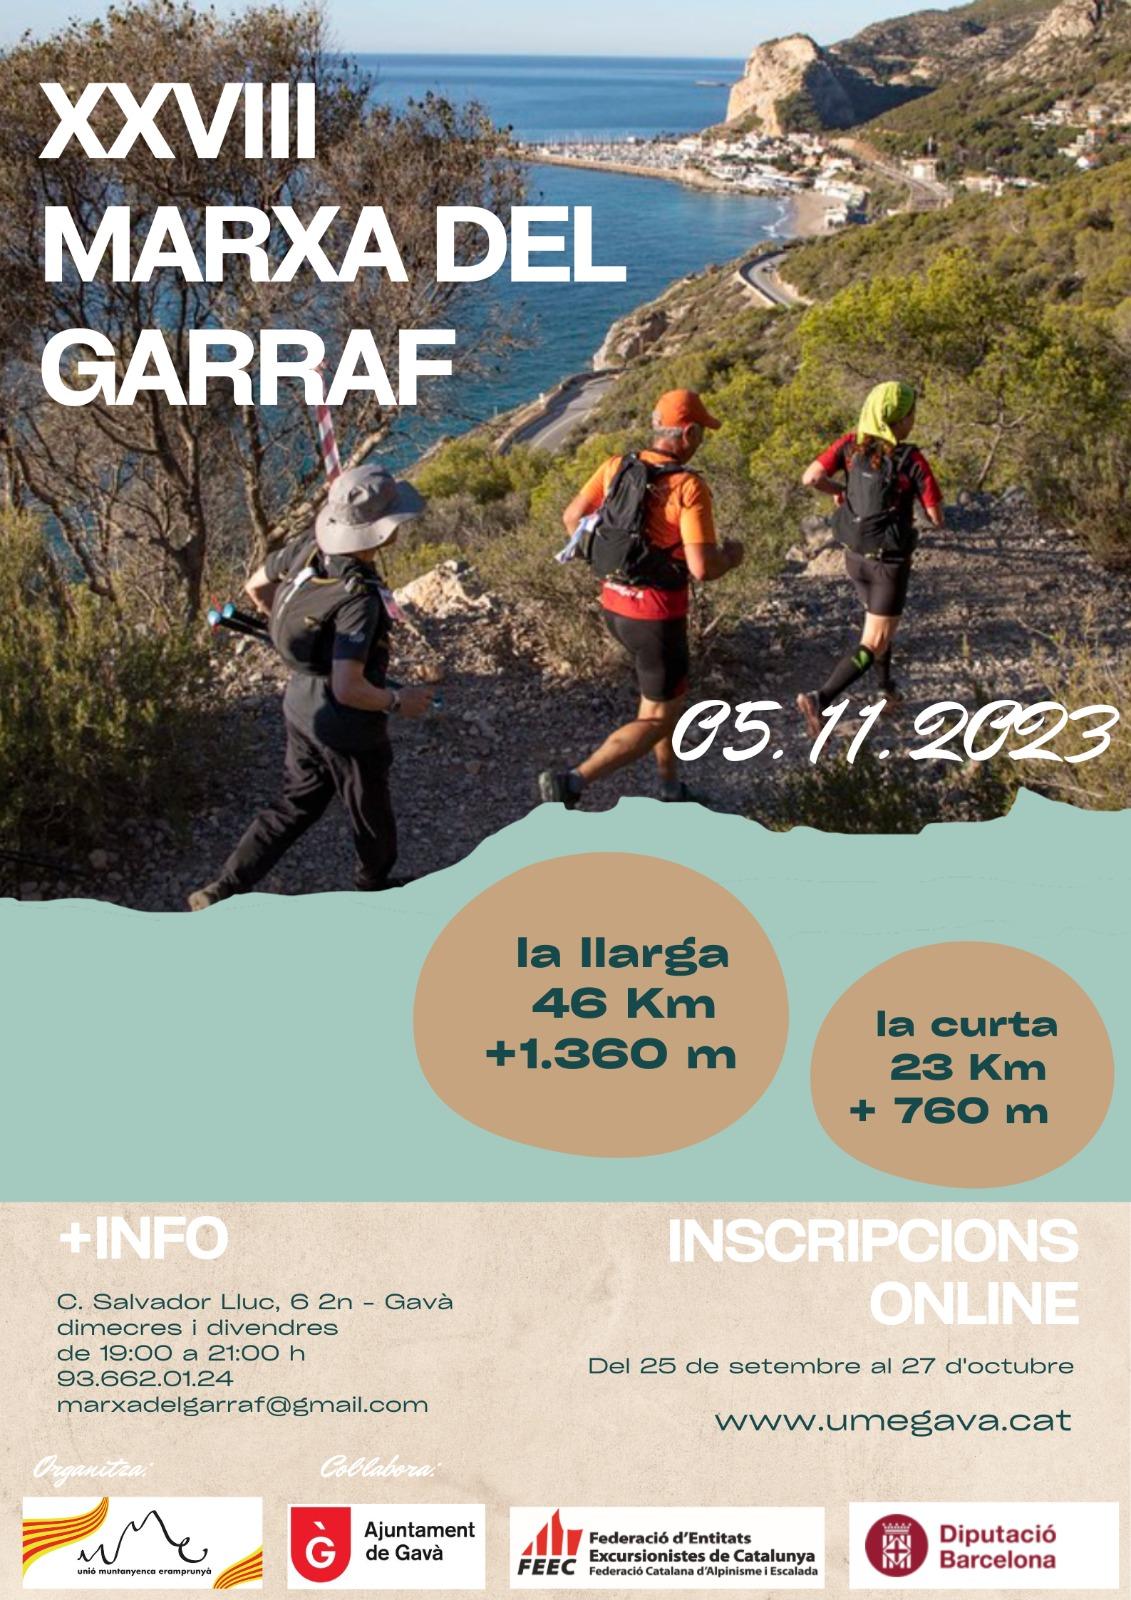 MARXA DEL GARRAF 45 KM - Inscriu-te